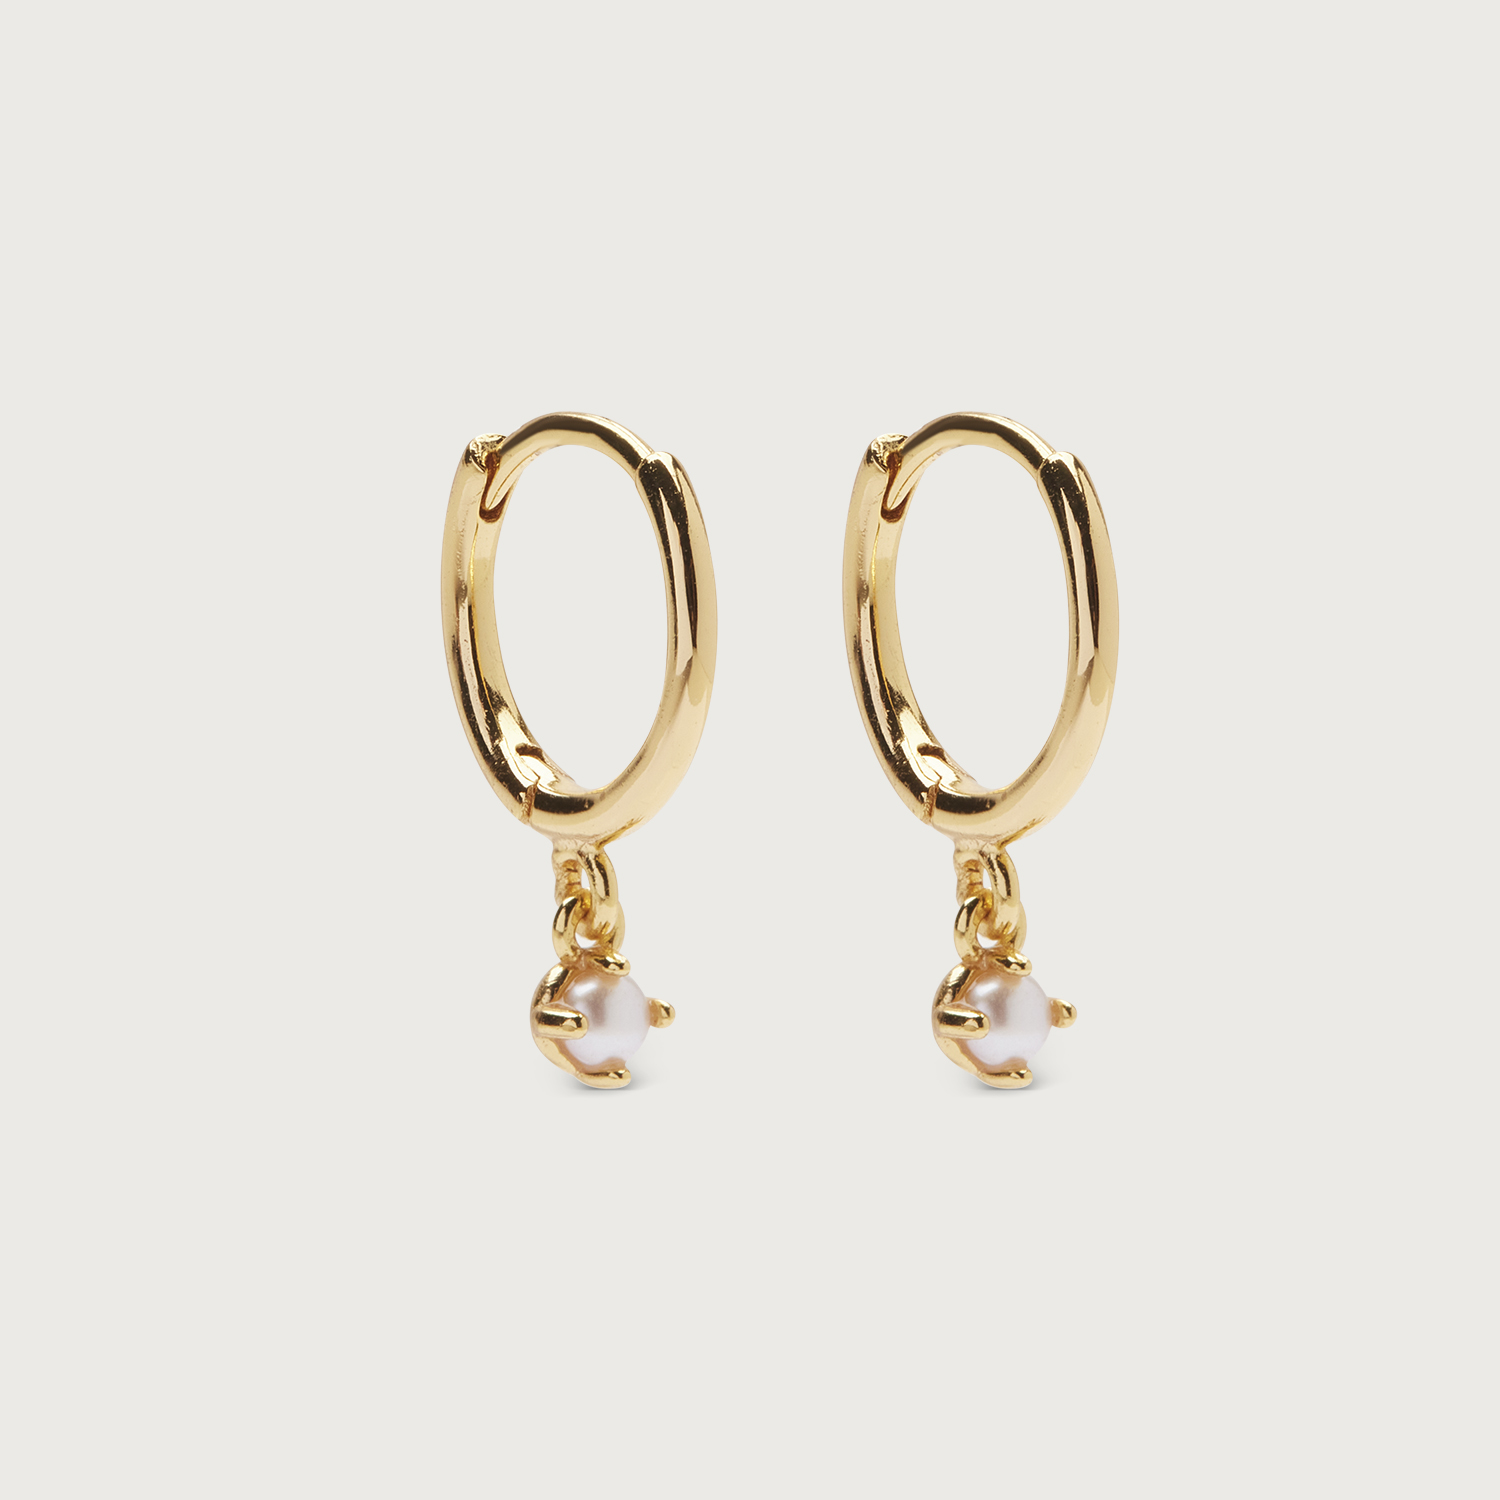 Petite Pearly hoops earrings